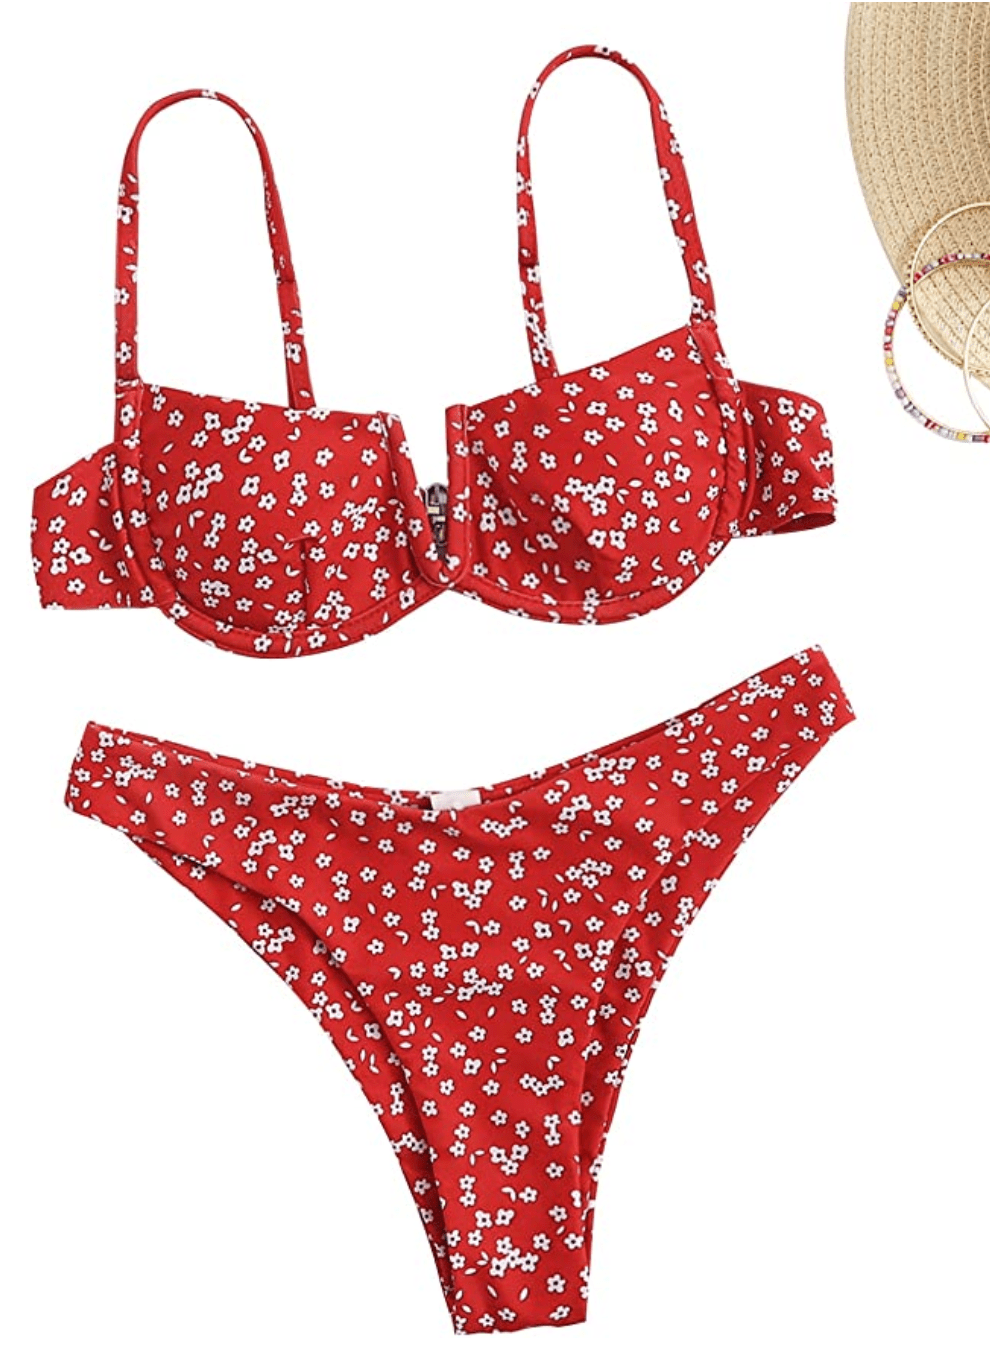 https://www.usmagazine.com/wp-content/uploads/2021/03/SweatyRocks-Womens-Sexy-Spaghetti-Strap-Floral-Bikini-Set-Underwire-Swimsuit.png?w=990&quality=86&strip=all